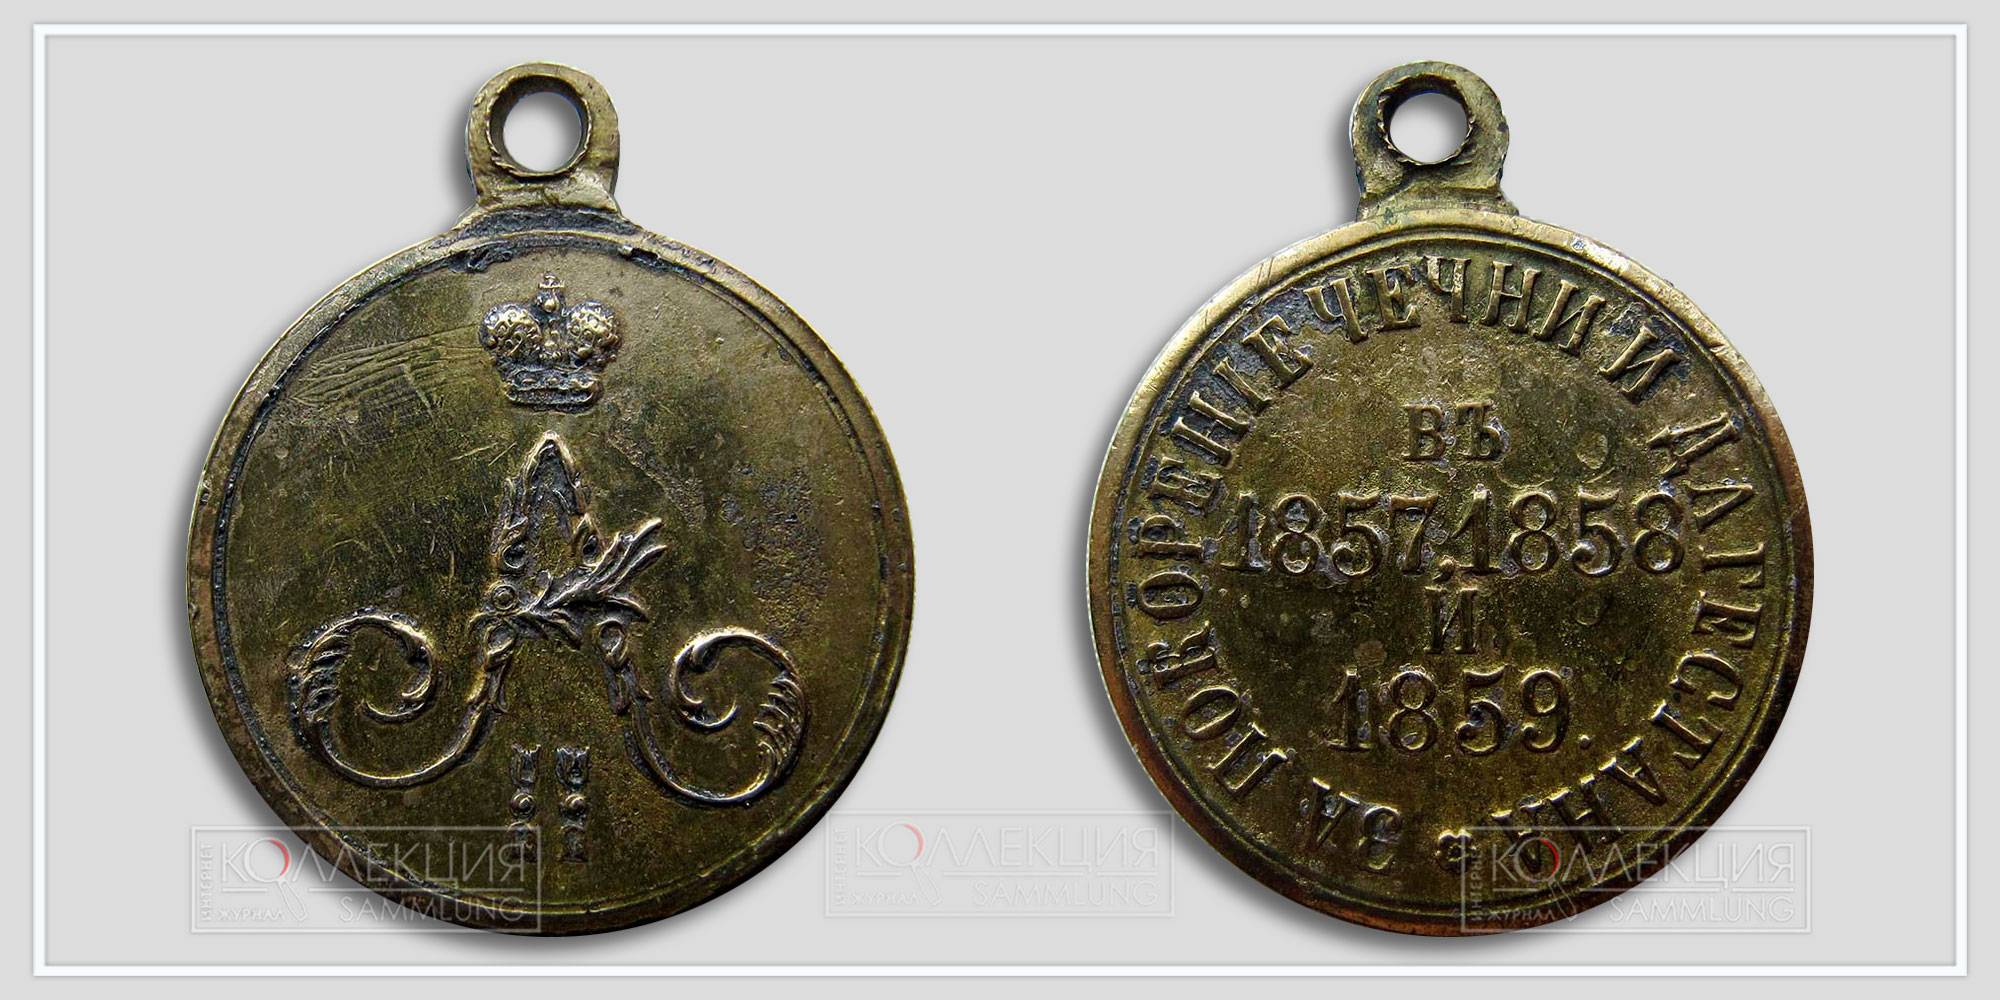 Медаль "За покорение Чечни и Дагестана 1857-1859" Частник (Медаль любезно предоставил Бабаев Виктор г. Кемерово)